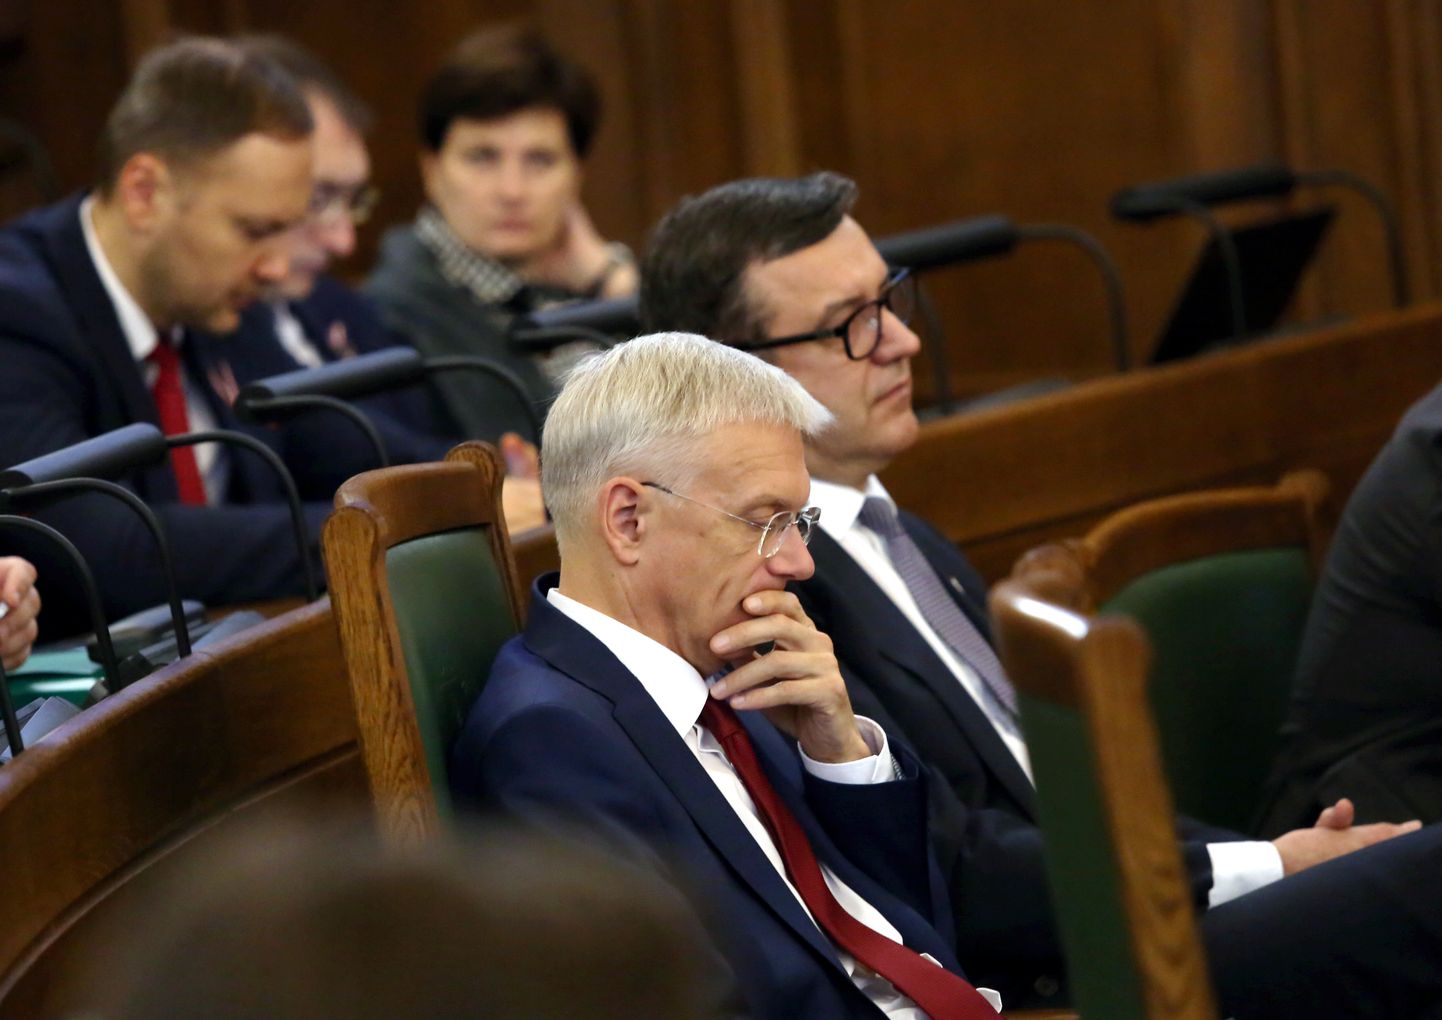 Кришьянис Кариньш на заседании Сейма по бюджету